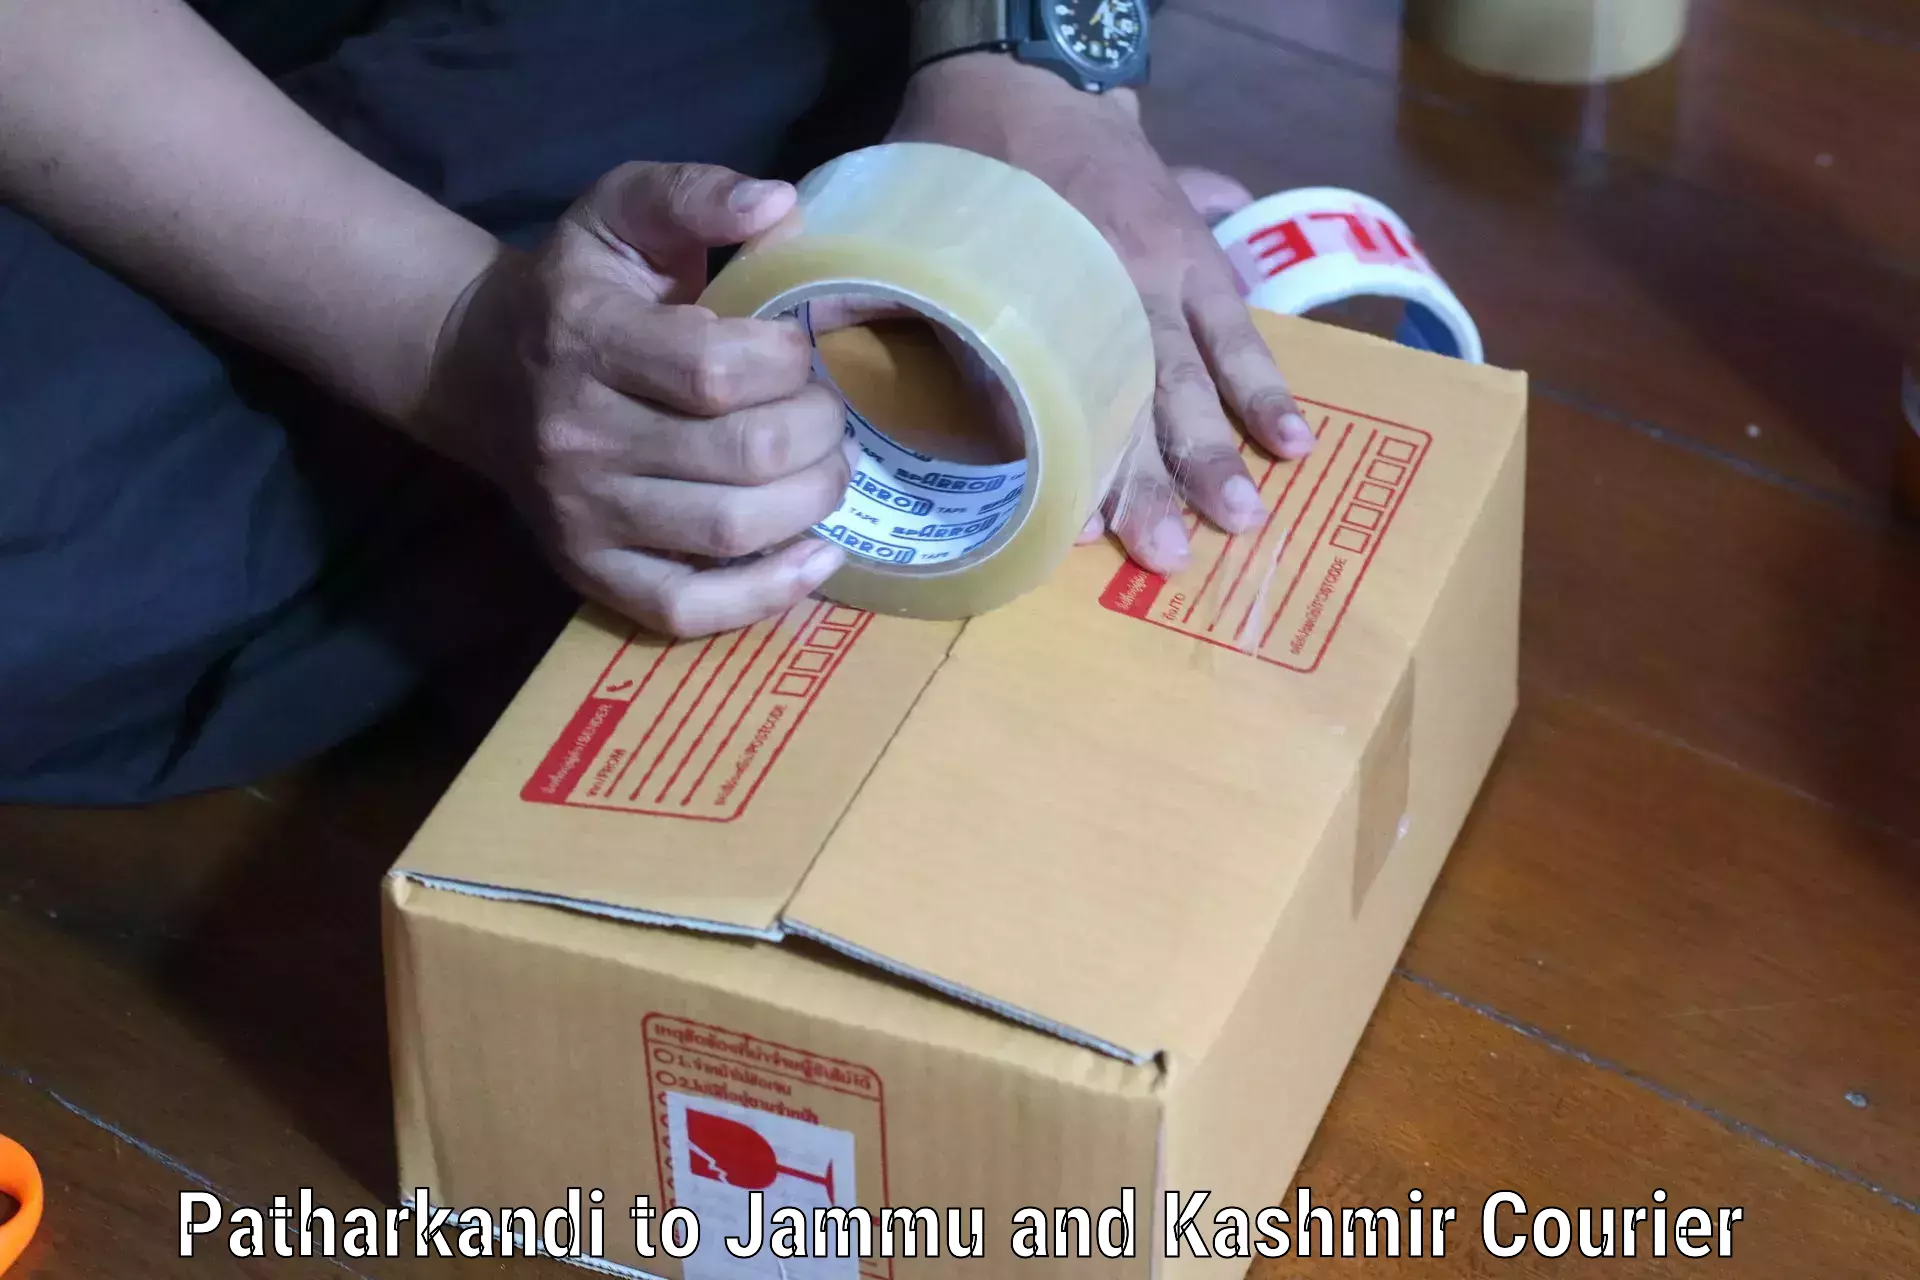 Efficient parcel service Patharkandi to Shopian